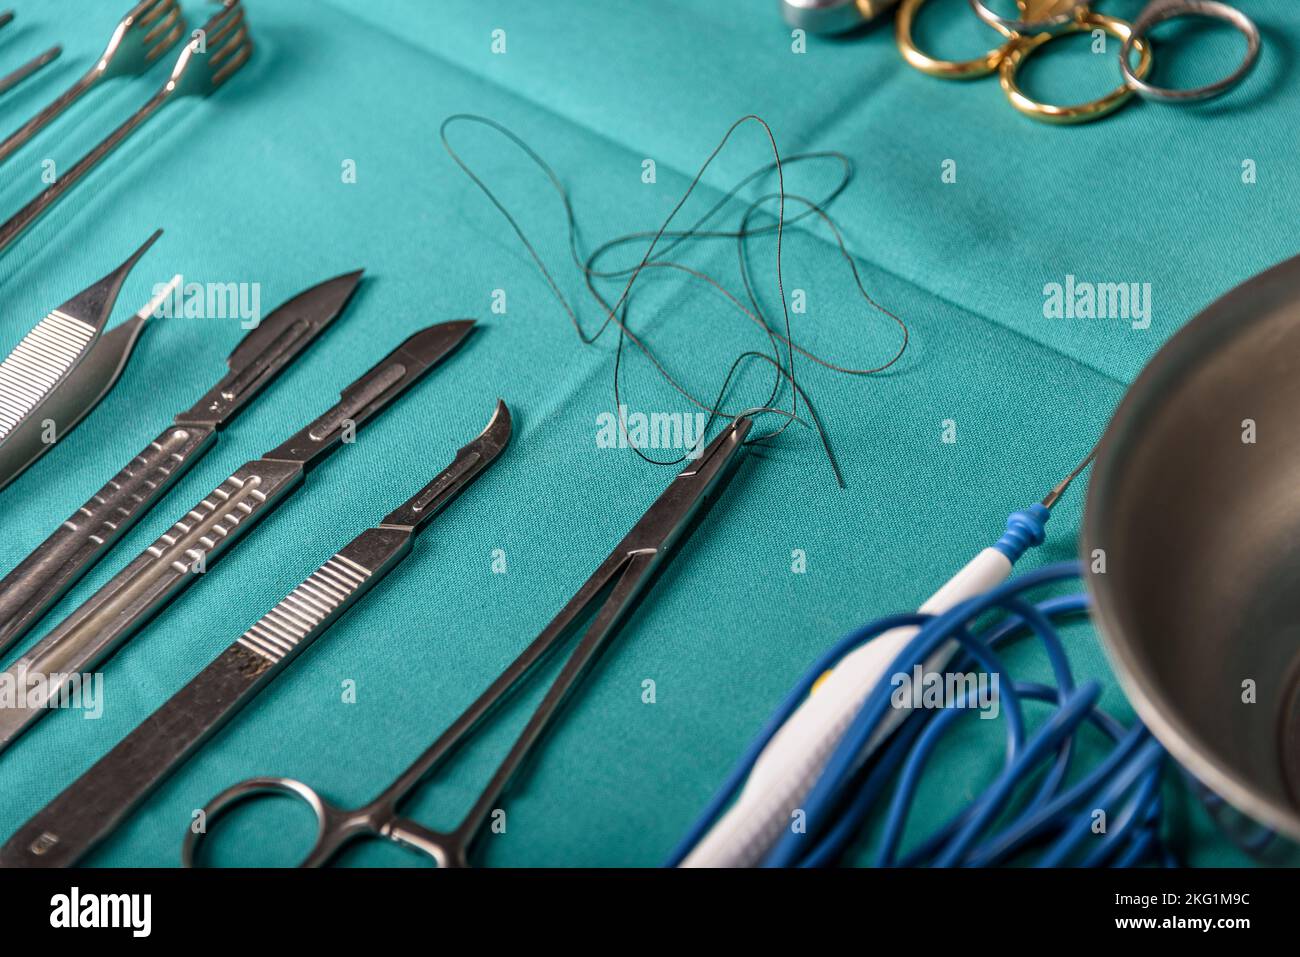 Apparecchiature chirurgiche e dispositivi medici in sala operatoria. Forbici sterili e altri strumenti medici. Foto Stock